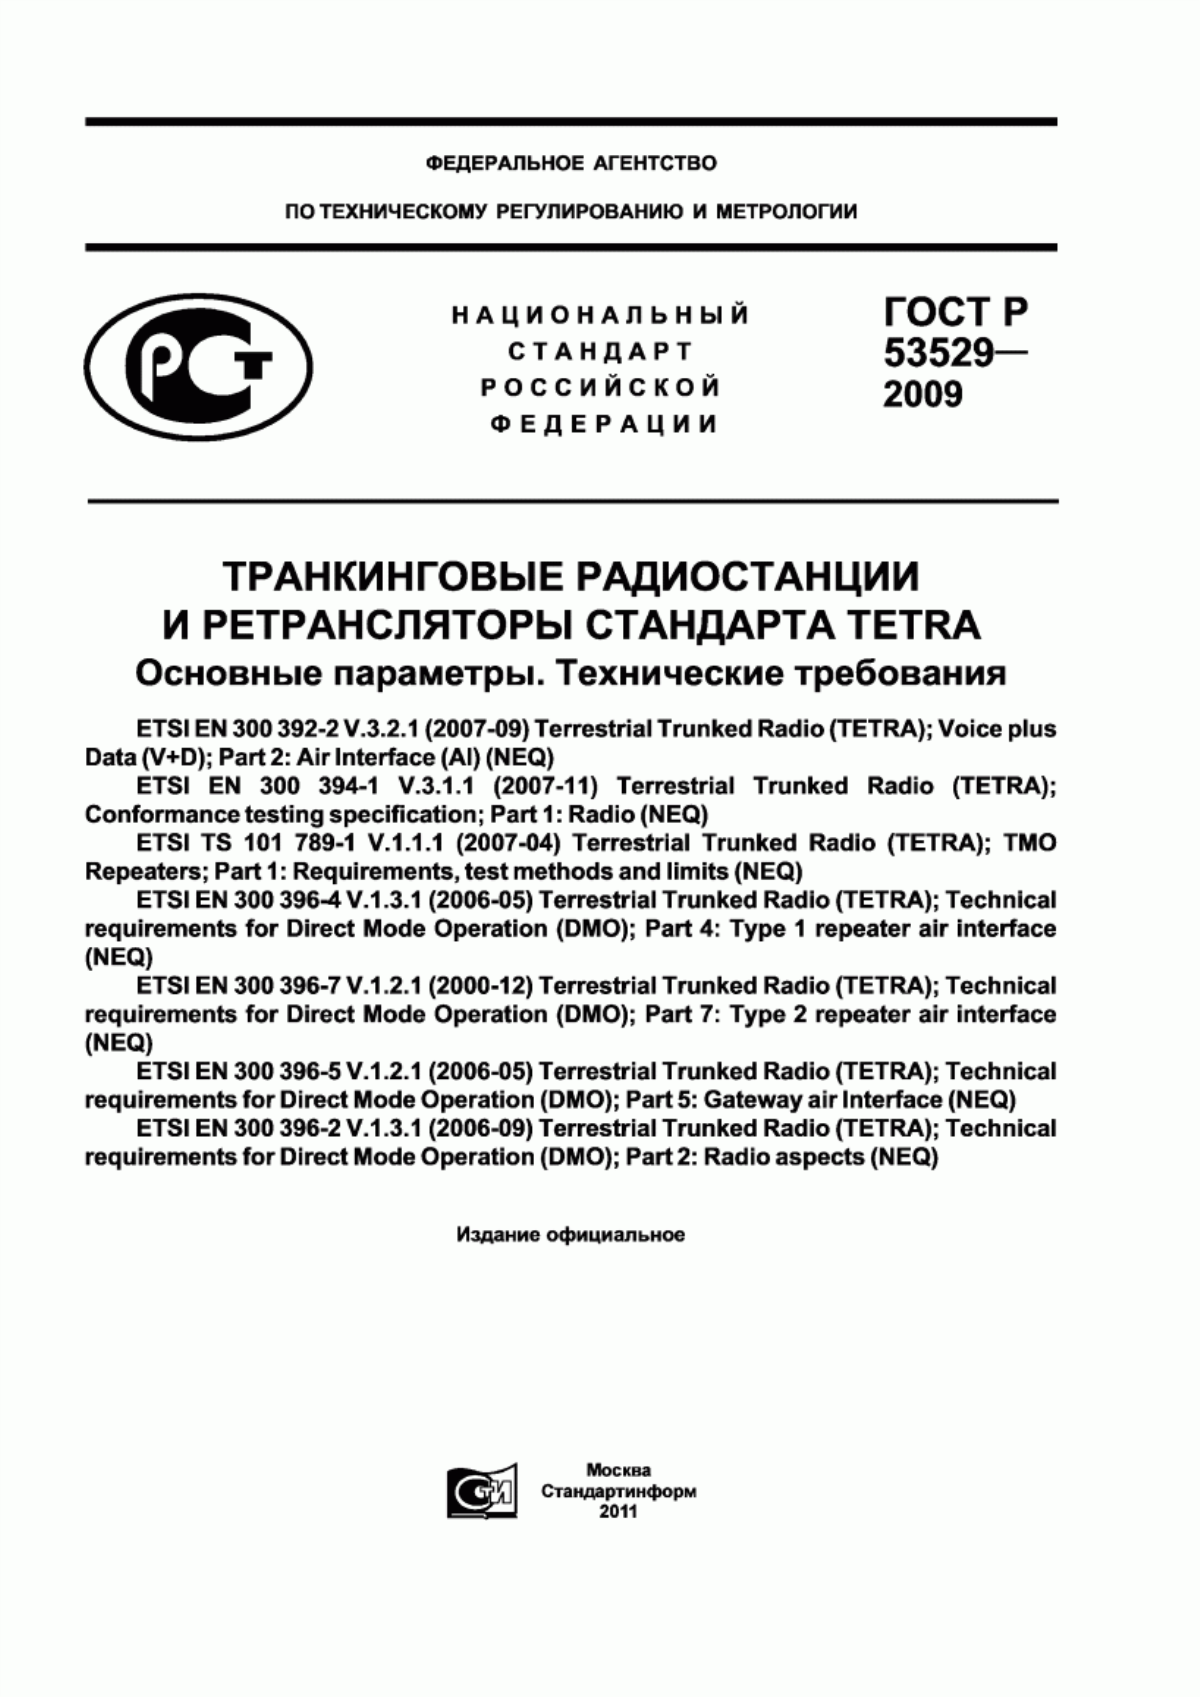 ГОСТ Р 53529-2009 Транкинговые радиостанции и ретрансляторы стандарта TETRA. Основные параметры. Технические требования